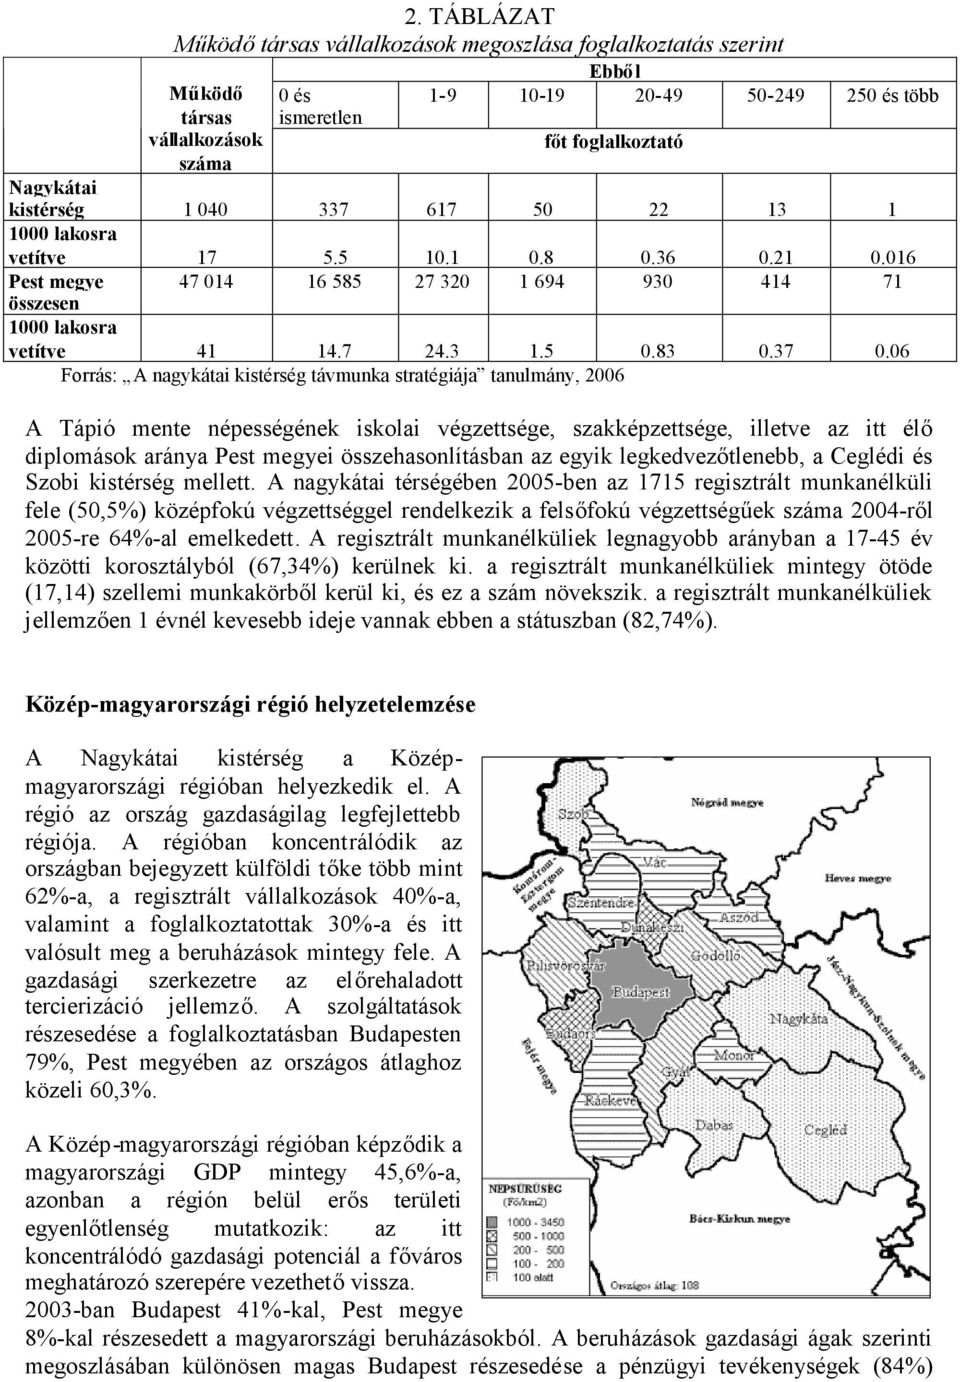 06 Forrás: A nagykátai kistérség távmunka stratégiája tanulmány, 2006 A Tápió mente népességének iskolai végzettsége, szakképzettsége, illetve az itt élő diplomások aránya Pest megyei